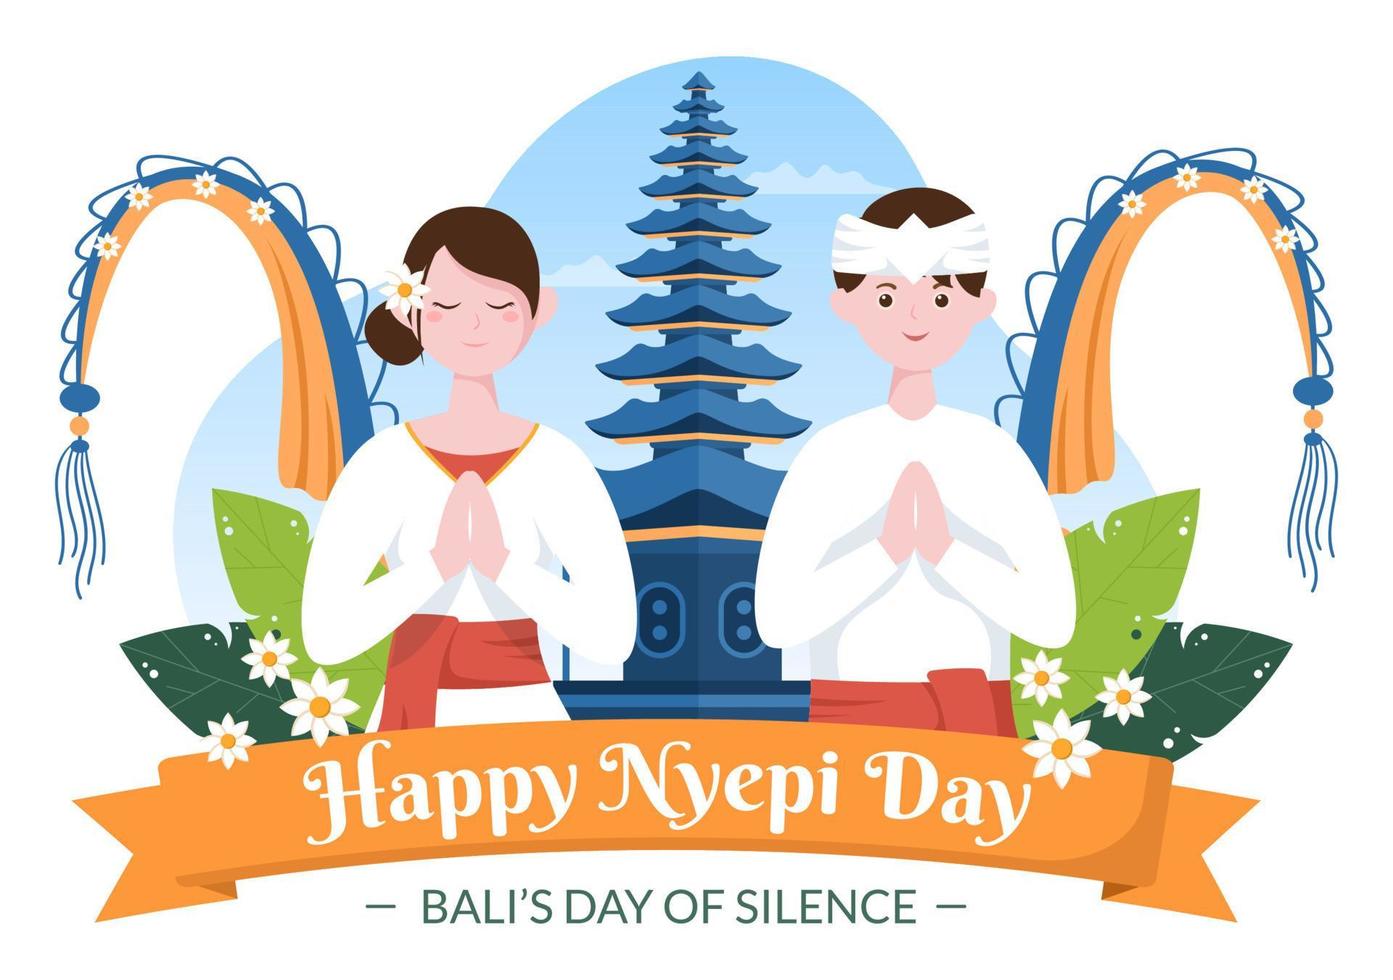 gelukkige nyepi-dag of bali's stilte voor hindoe-ceremonies in bali met galungan, kuningan en ngembak geni op de achtergrond van de tempelillustratie vector